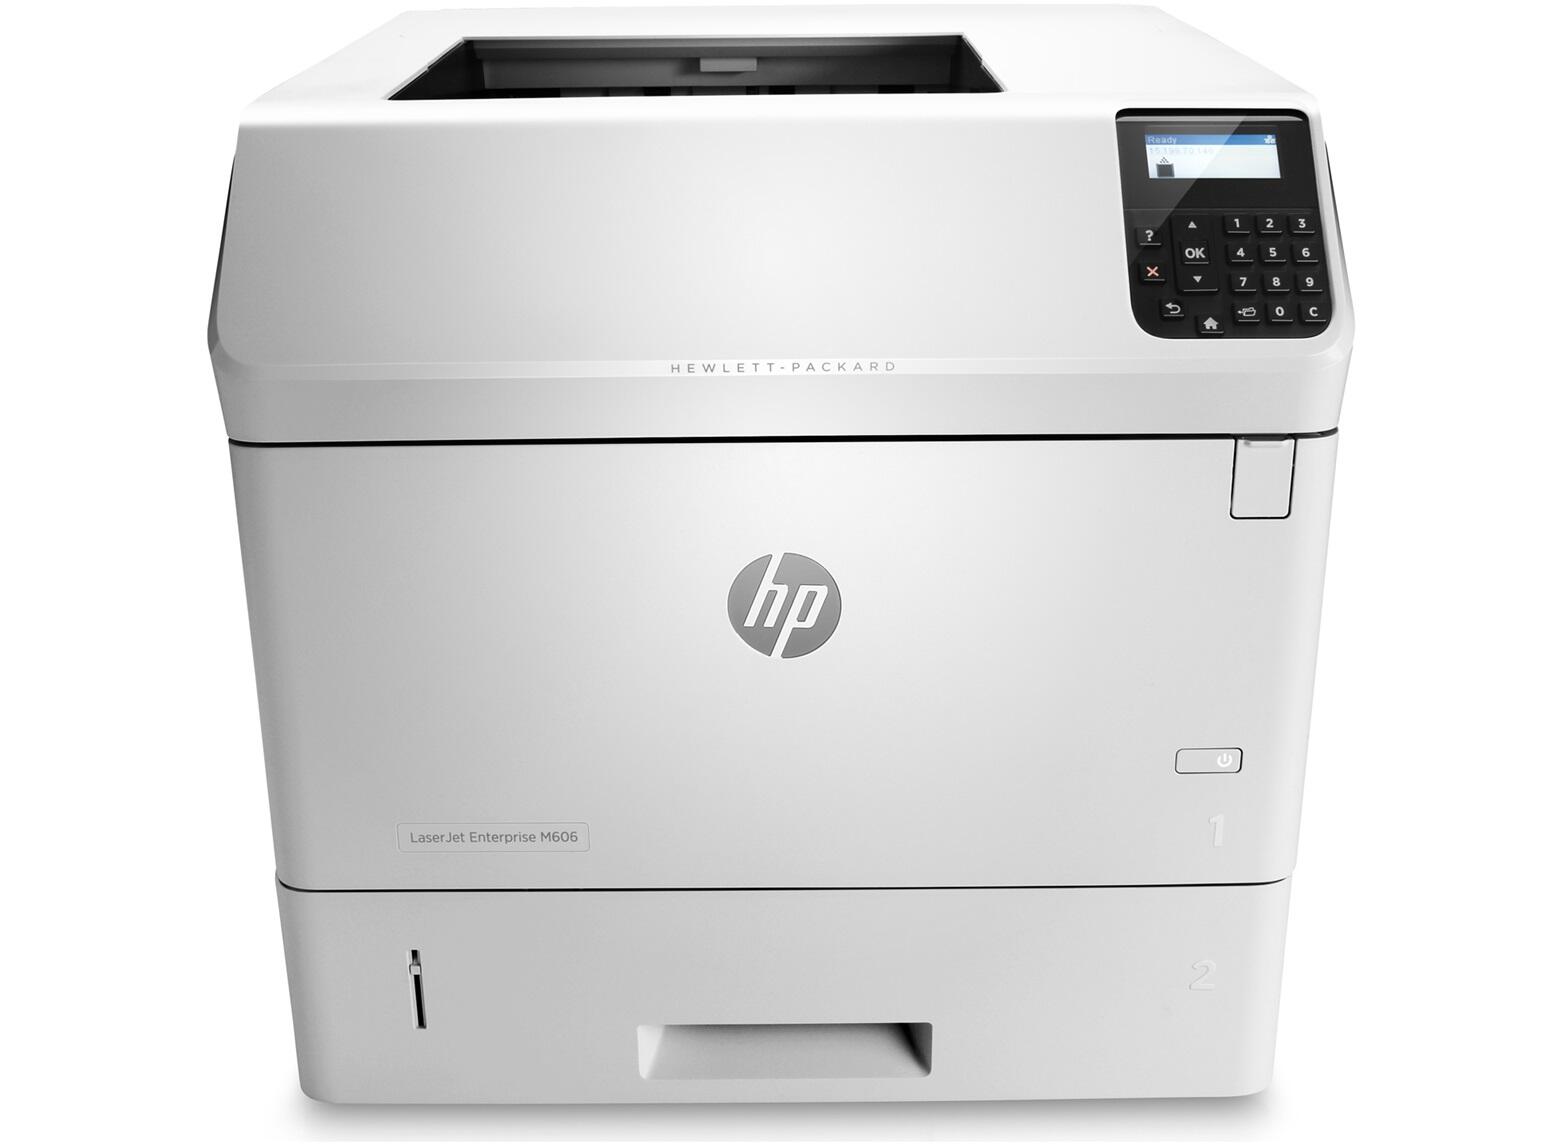 HP LaserJet Enterprise M 606 dn